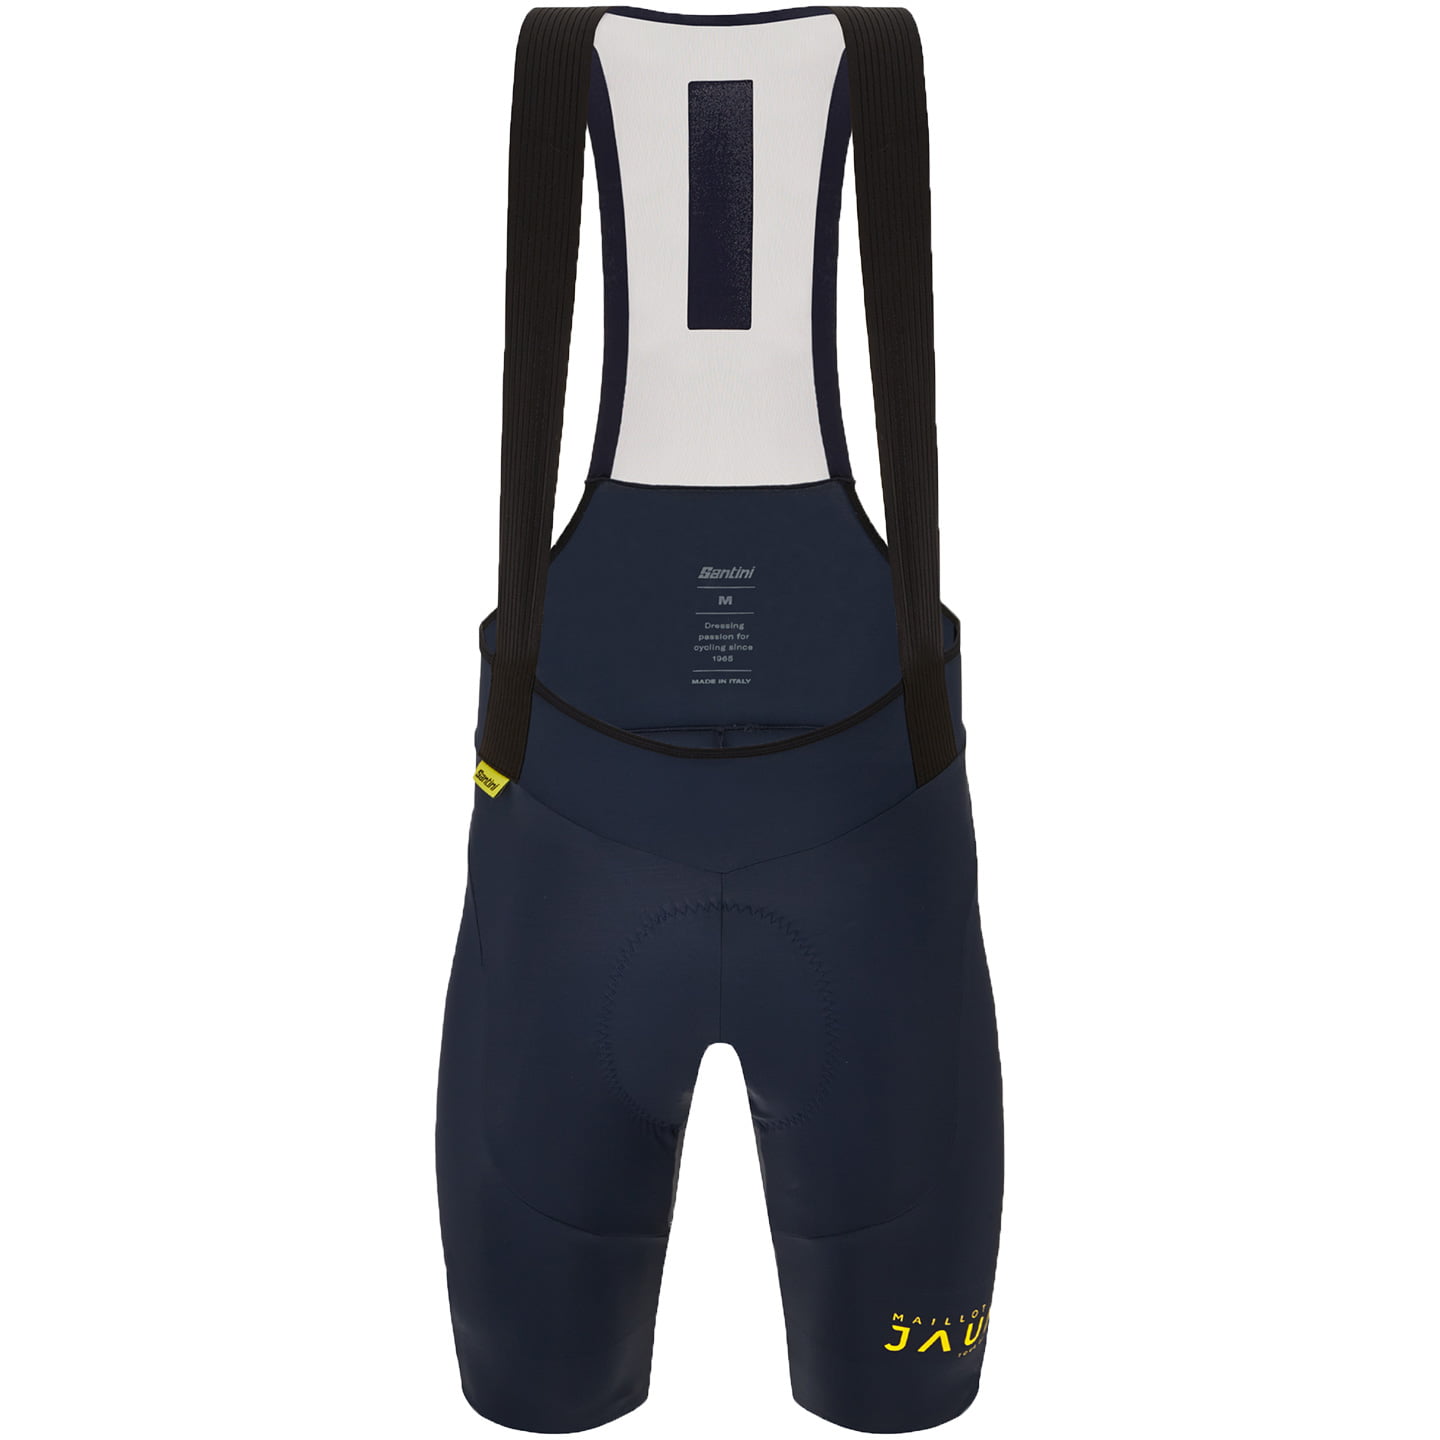 TOUR DE FRANCE Bib Shorts Le Maillot Jaune Allez 2023, for men, size L, Cycle shorts, Cycling clothing